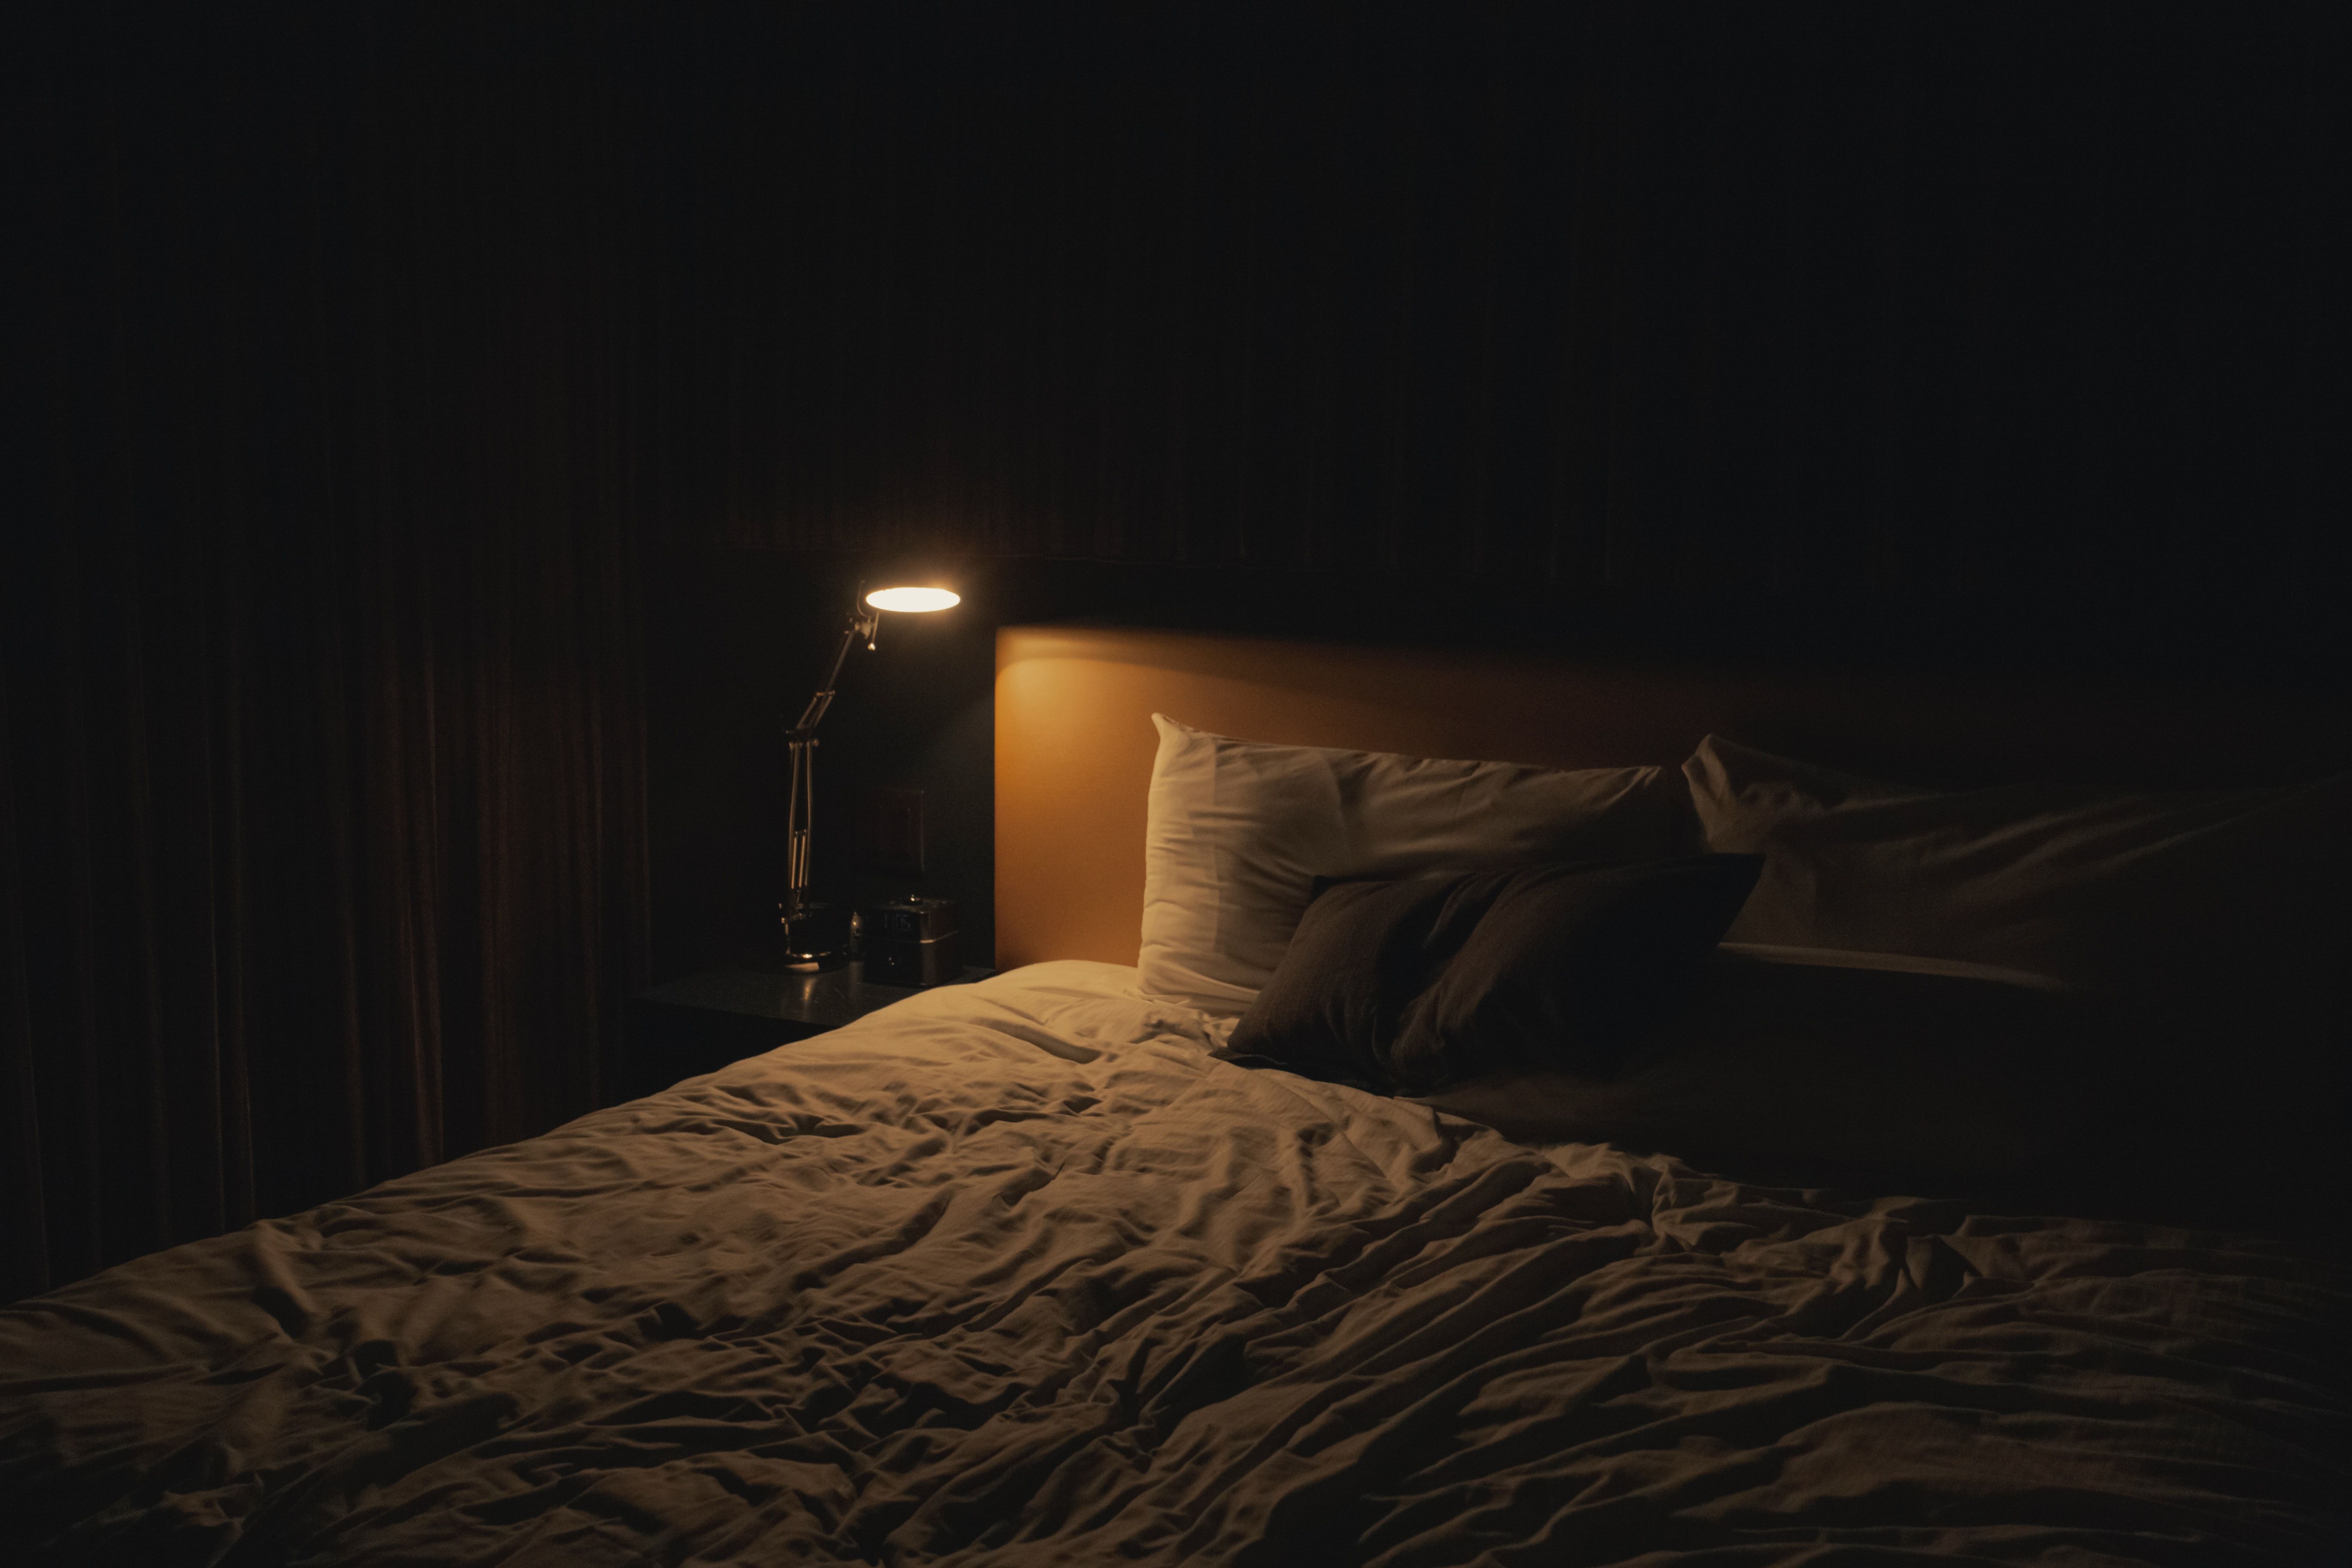 A bed at night.